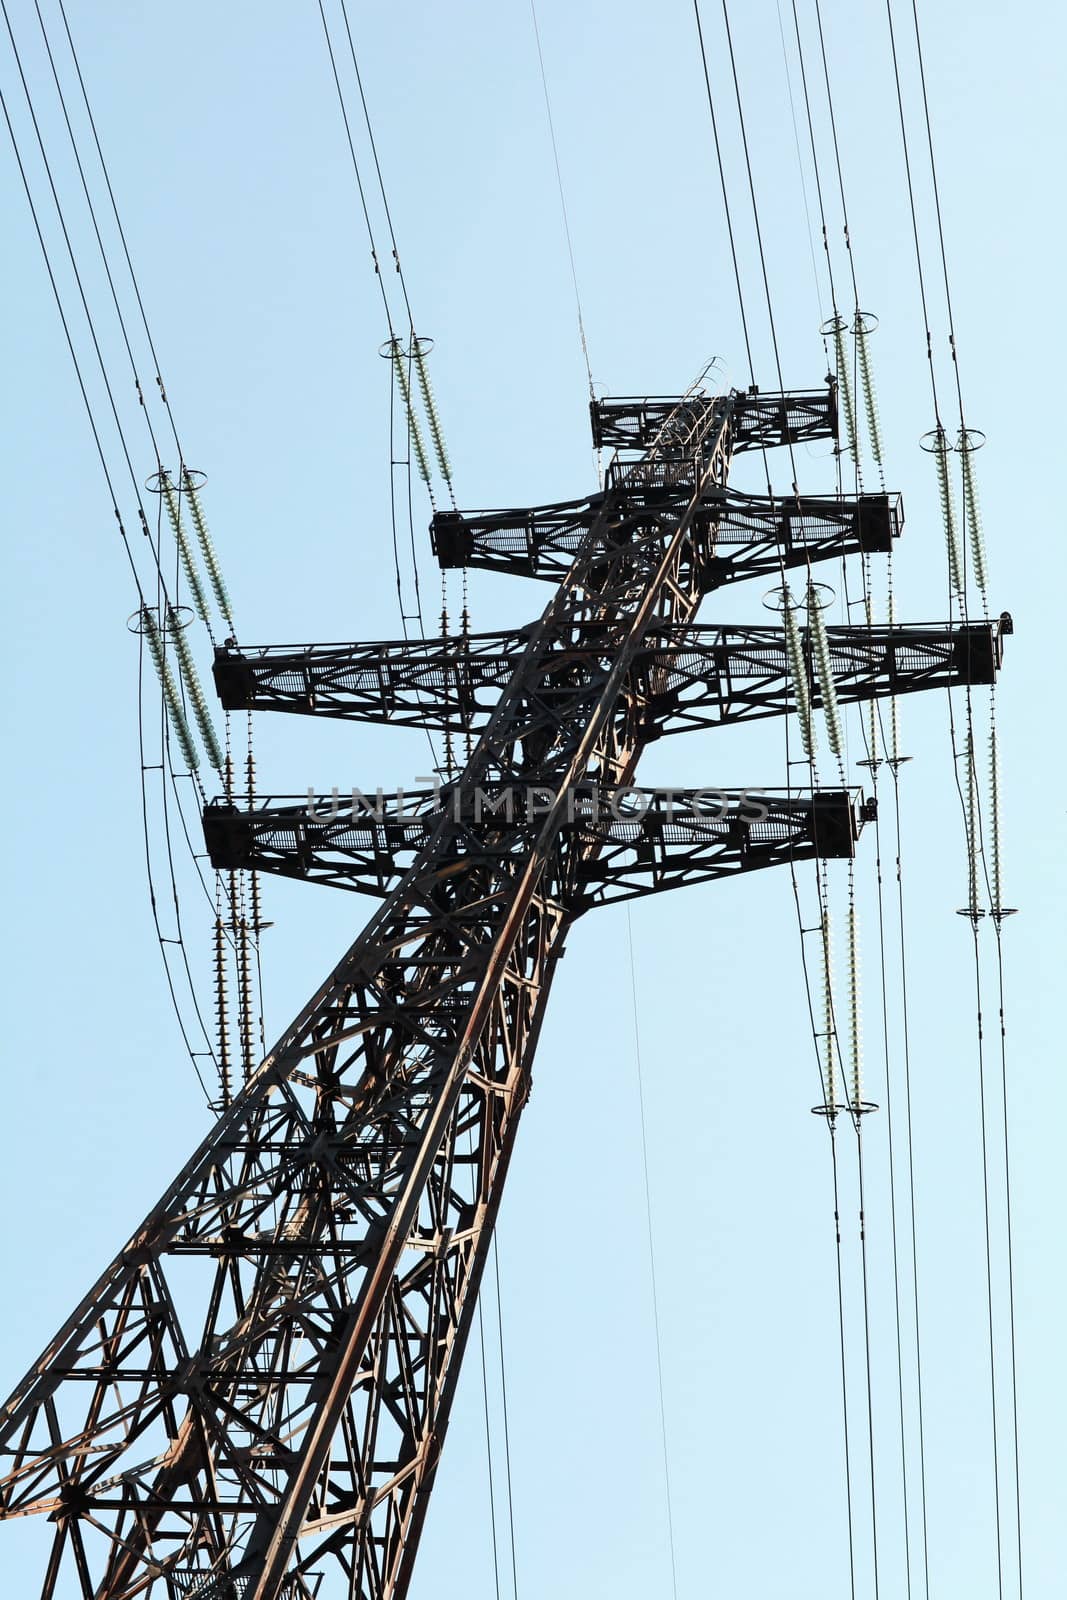 electricity pylon   by mrivserg